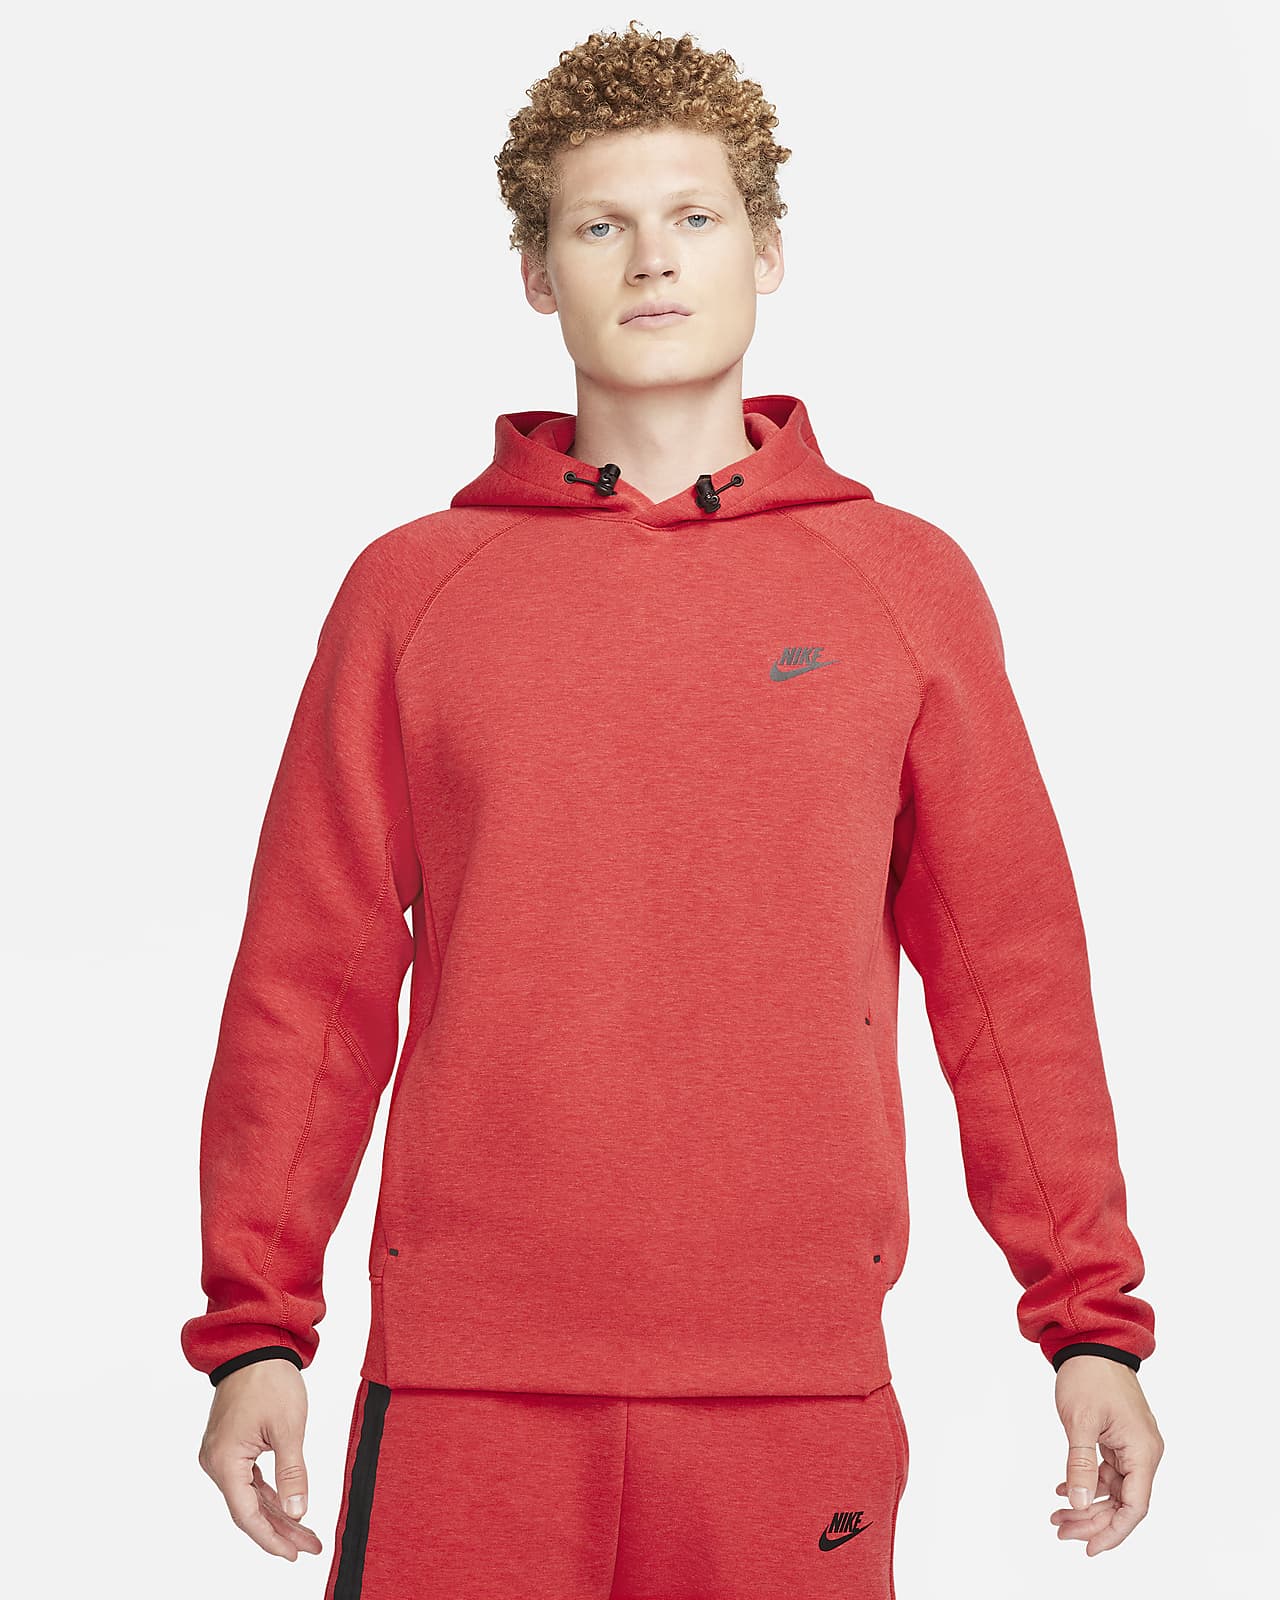 Nike Sportswear Tech Fleece Men's Pullover